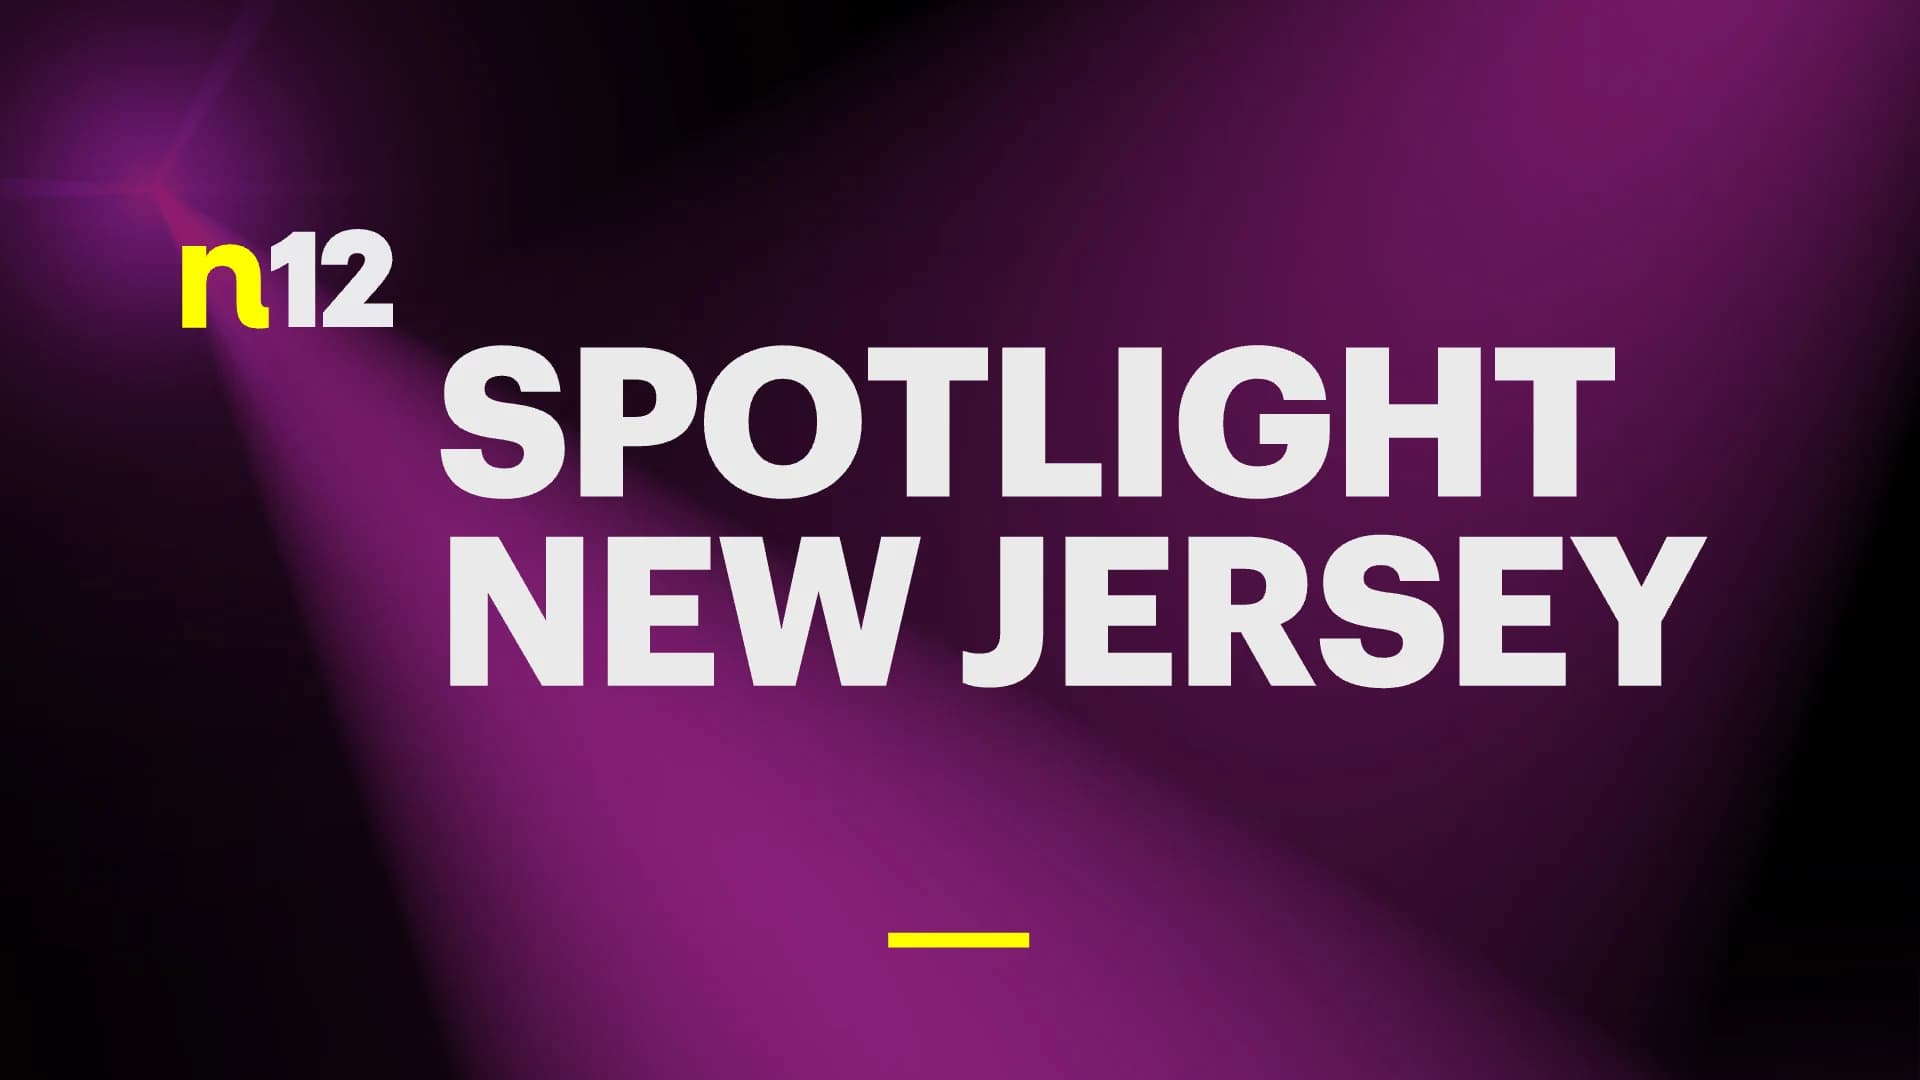 Spotlight New Jersey - Information